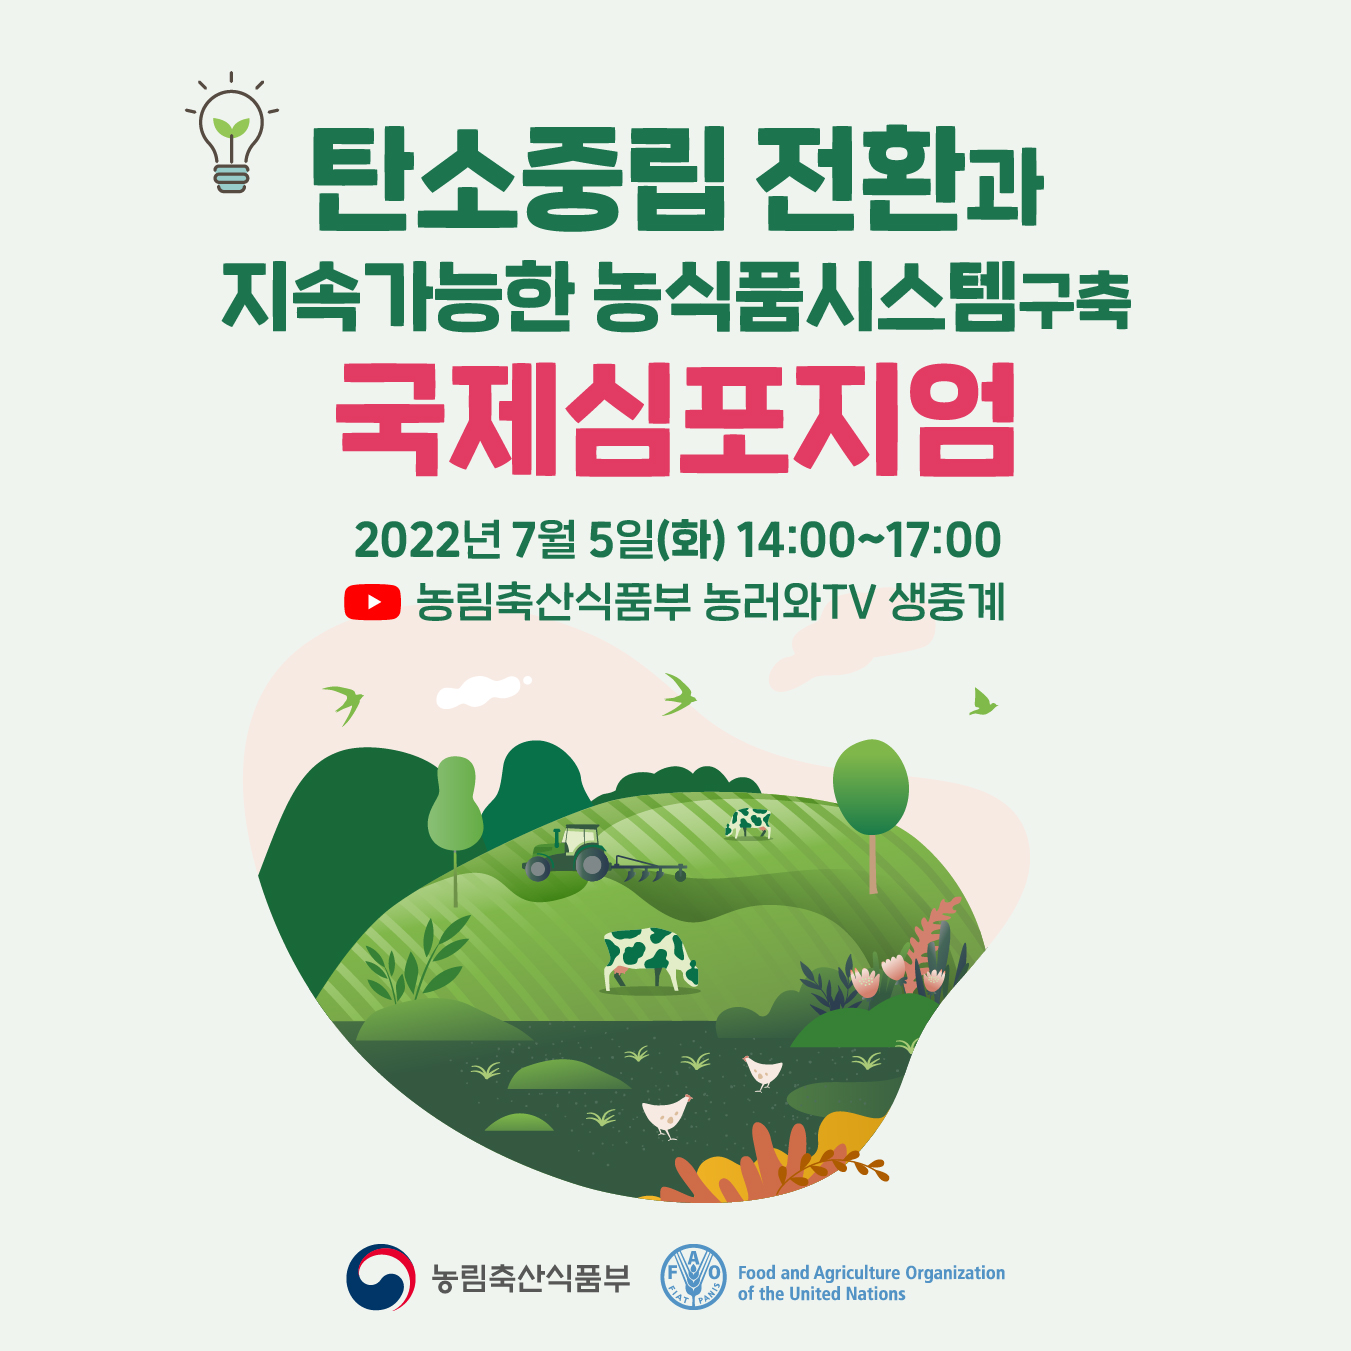 탄소중립 전환과 지속가능한 농식품시스템구축 국제심포지엄 탄소중립전환_1.jpg